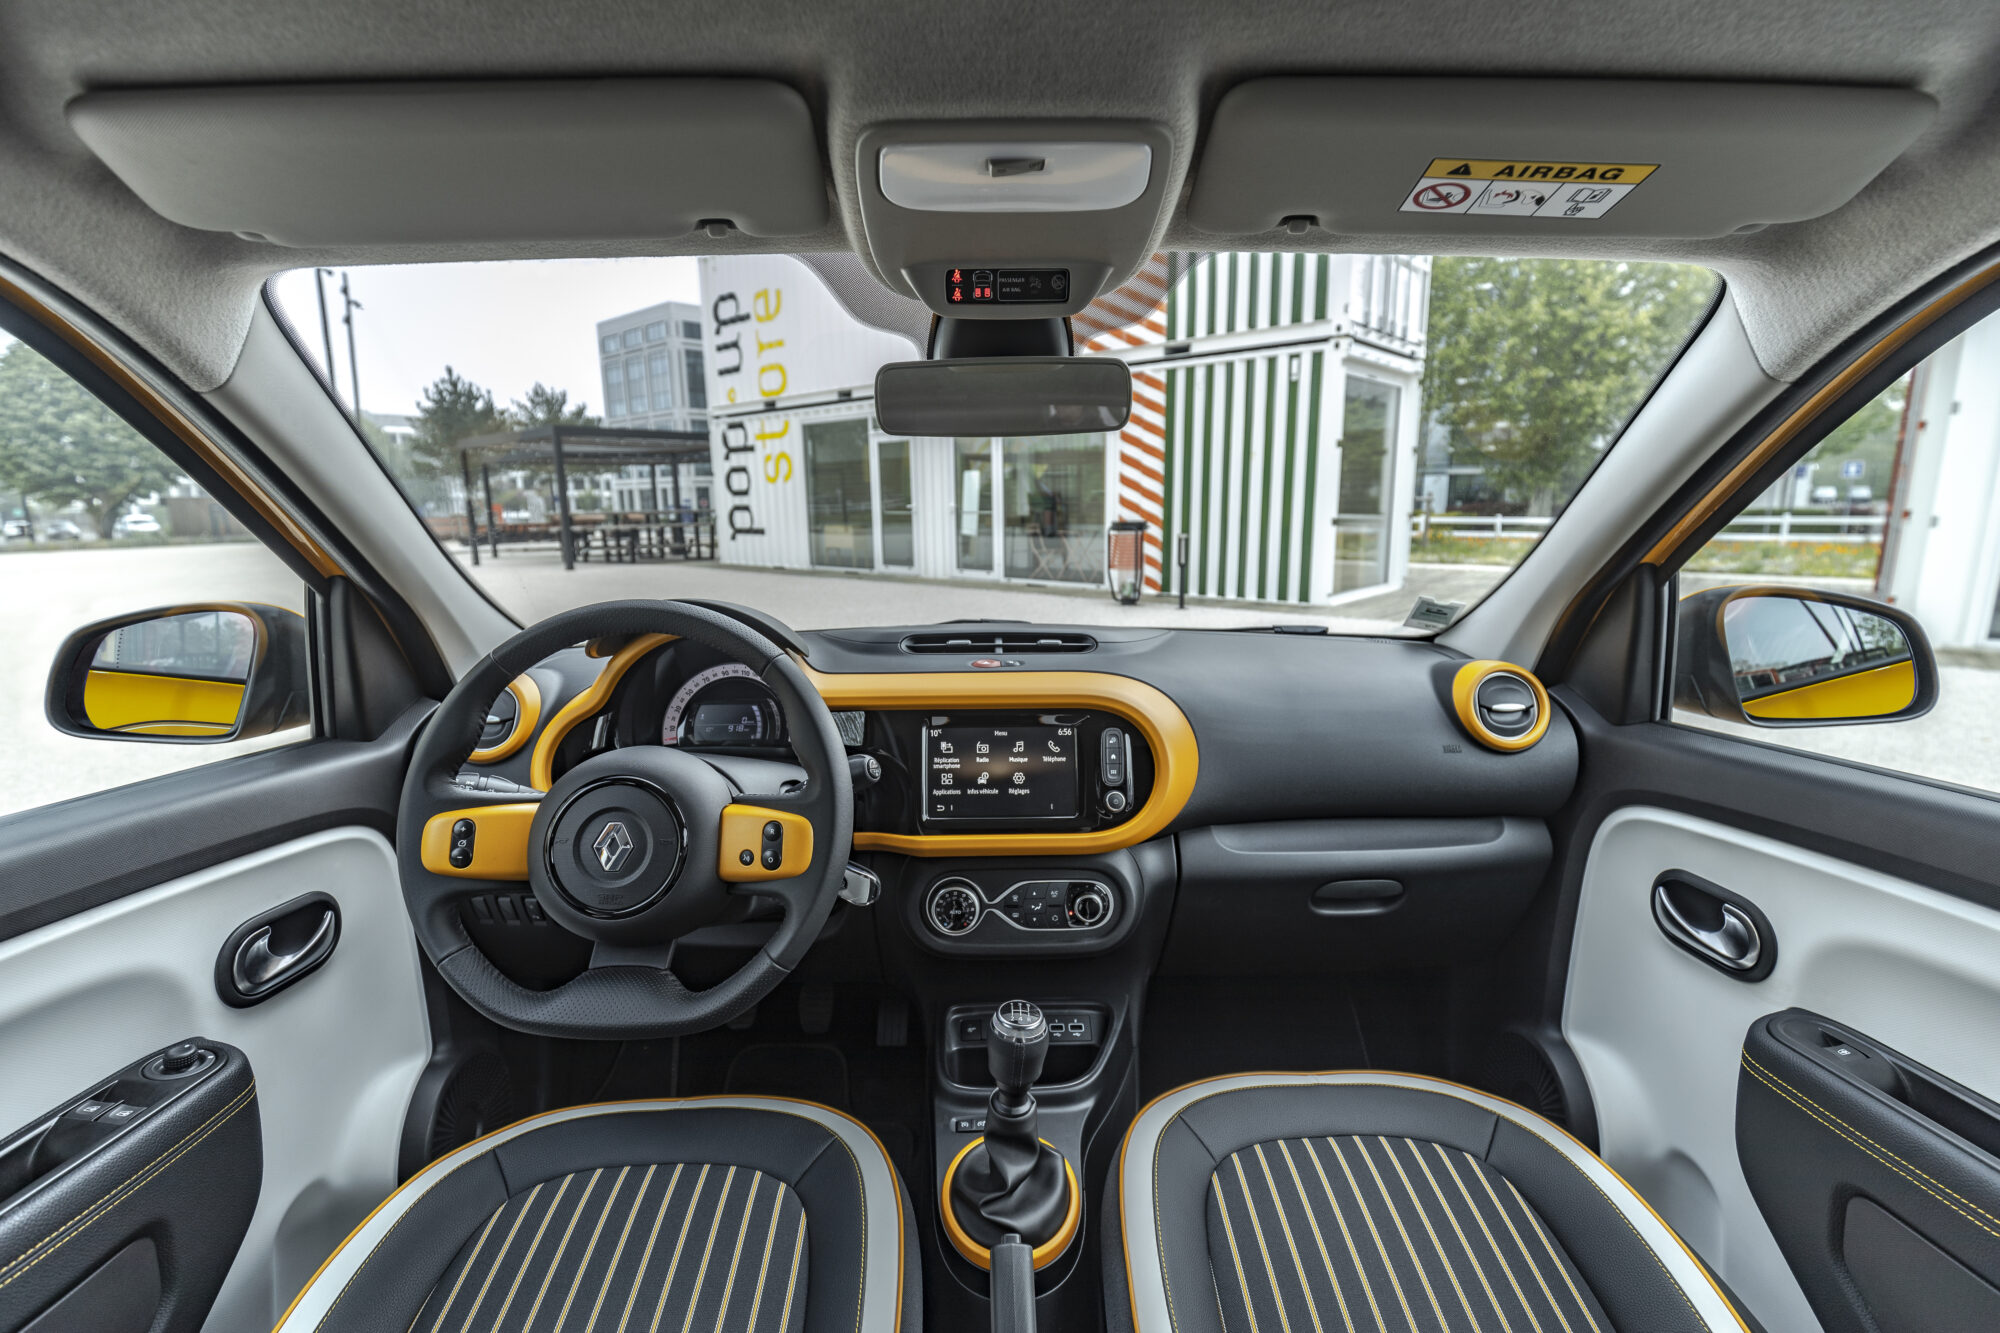 2019 - Nouvelle Renault TWINGO